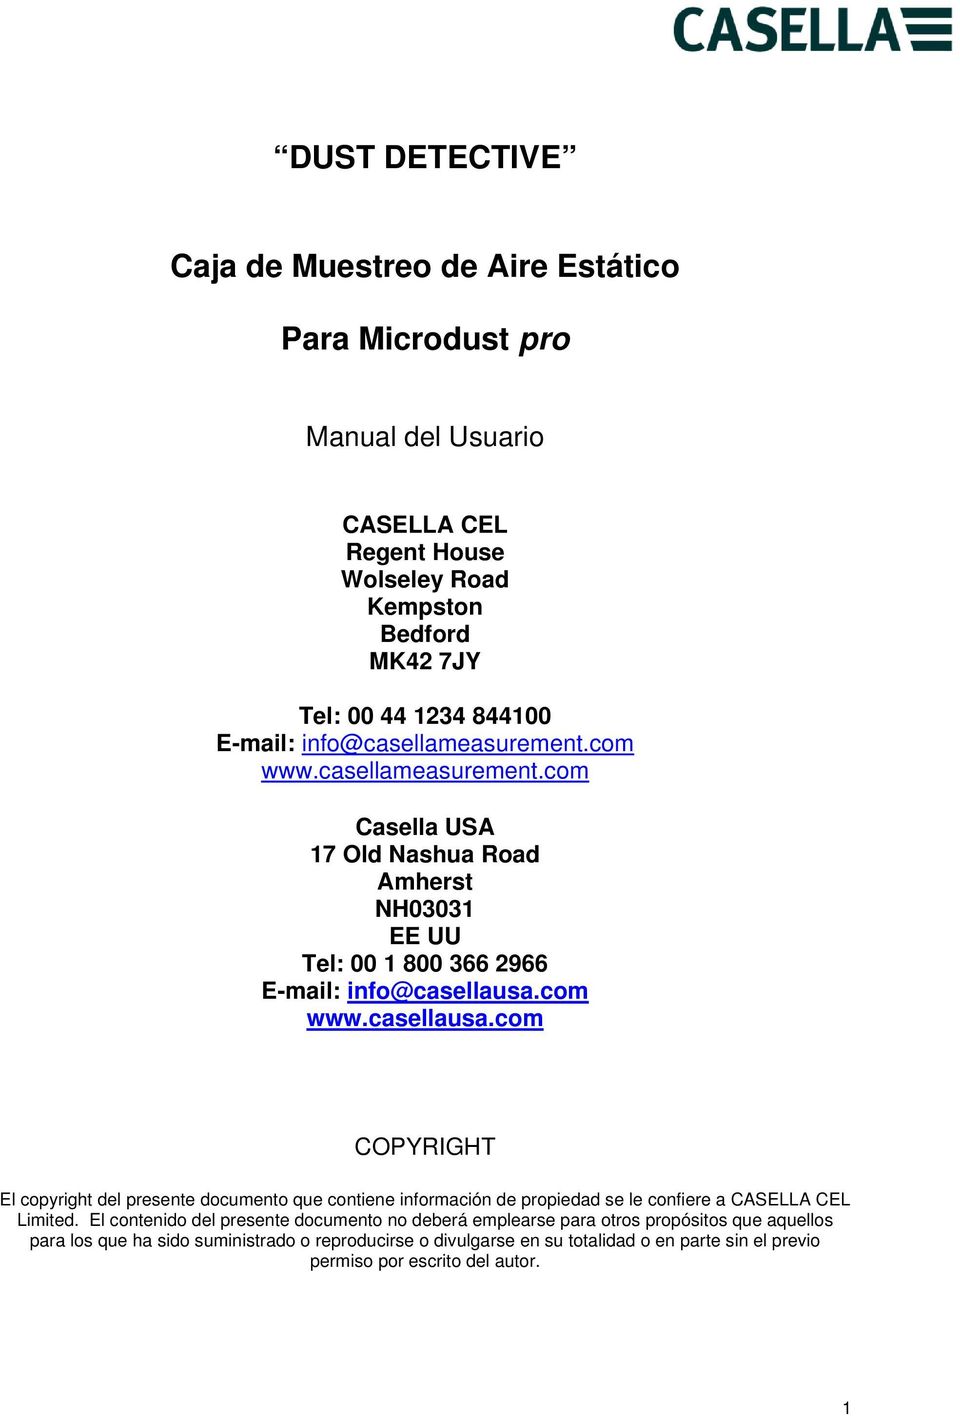 com www.casellausa.com COPYRIGHT El copyright del presente documento que contiene información de propiedad se le confiere a CASELLA CEL Limited.